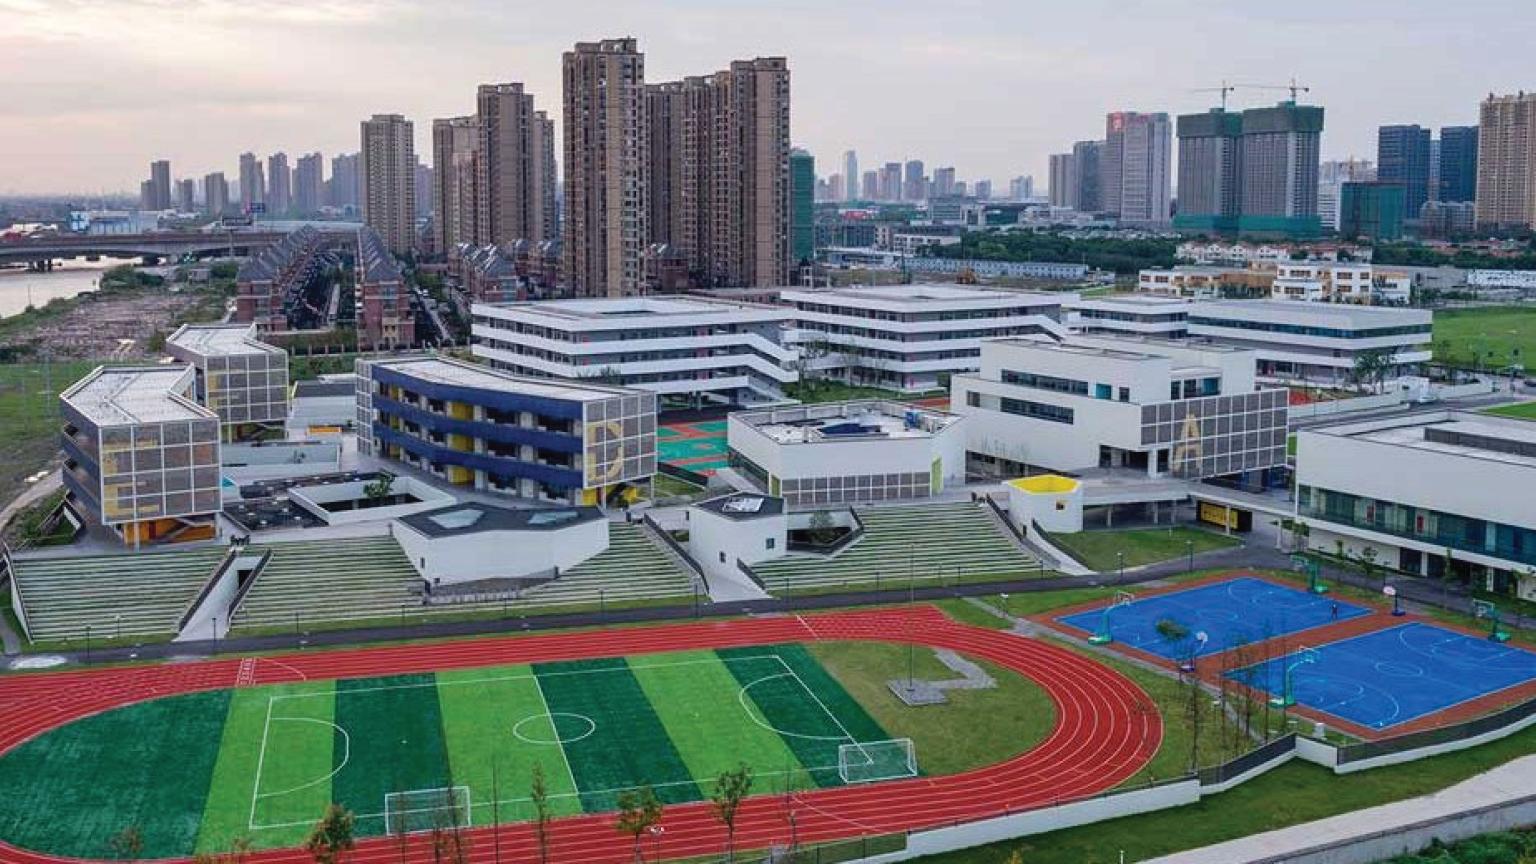 Aerial view of Tongji University